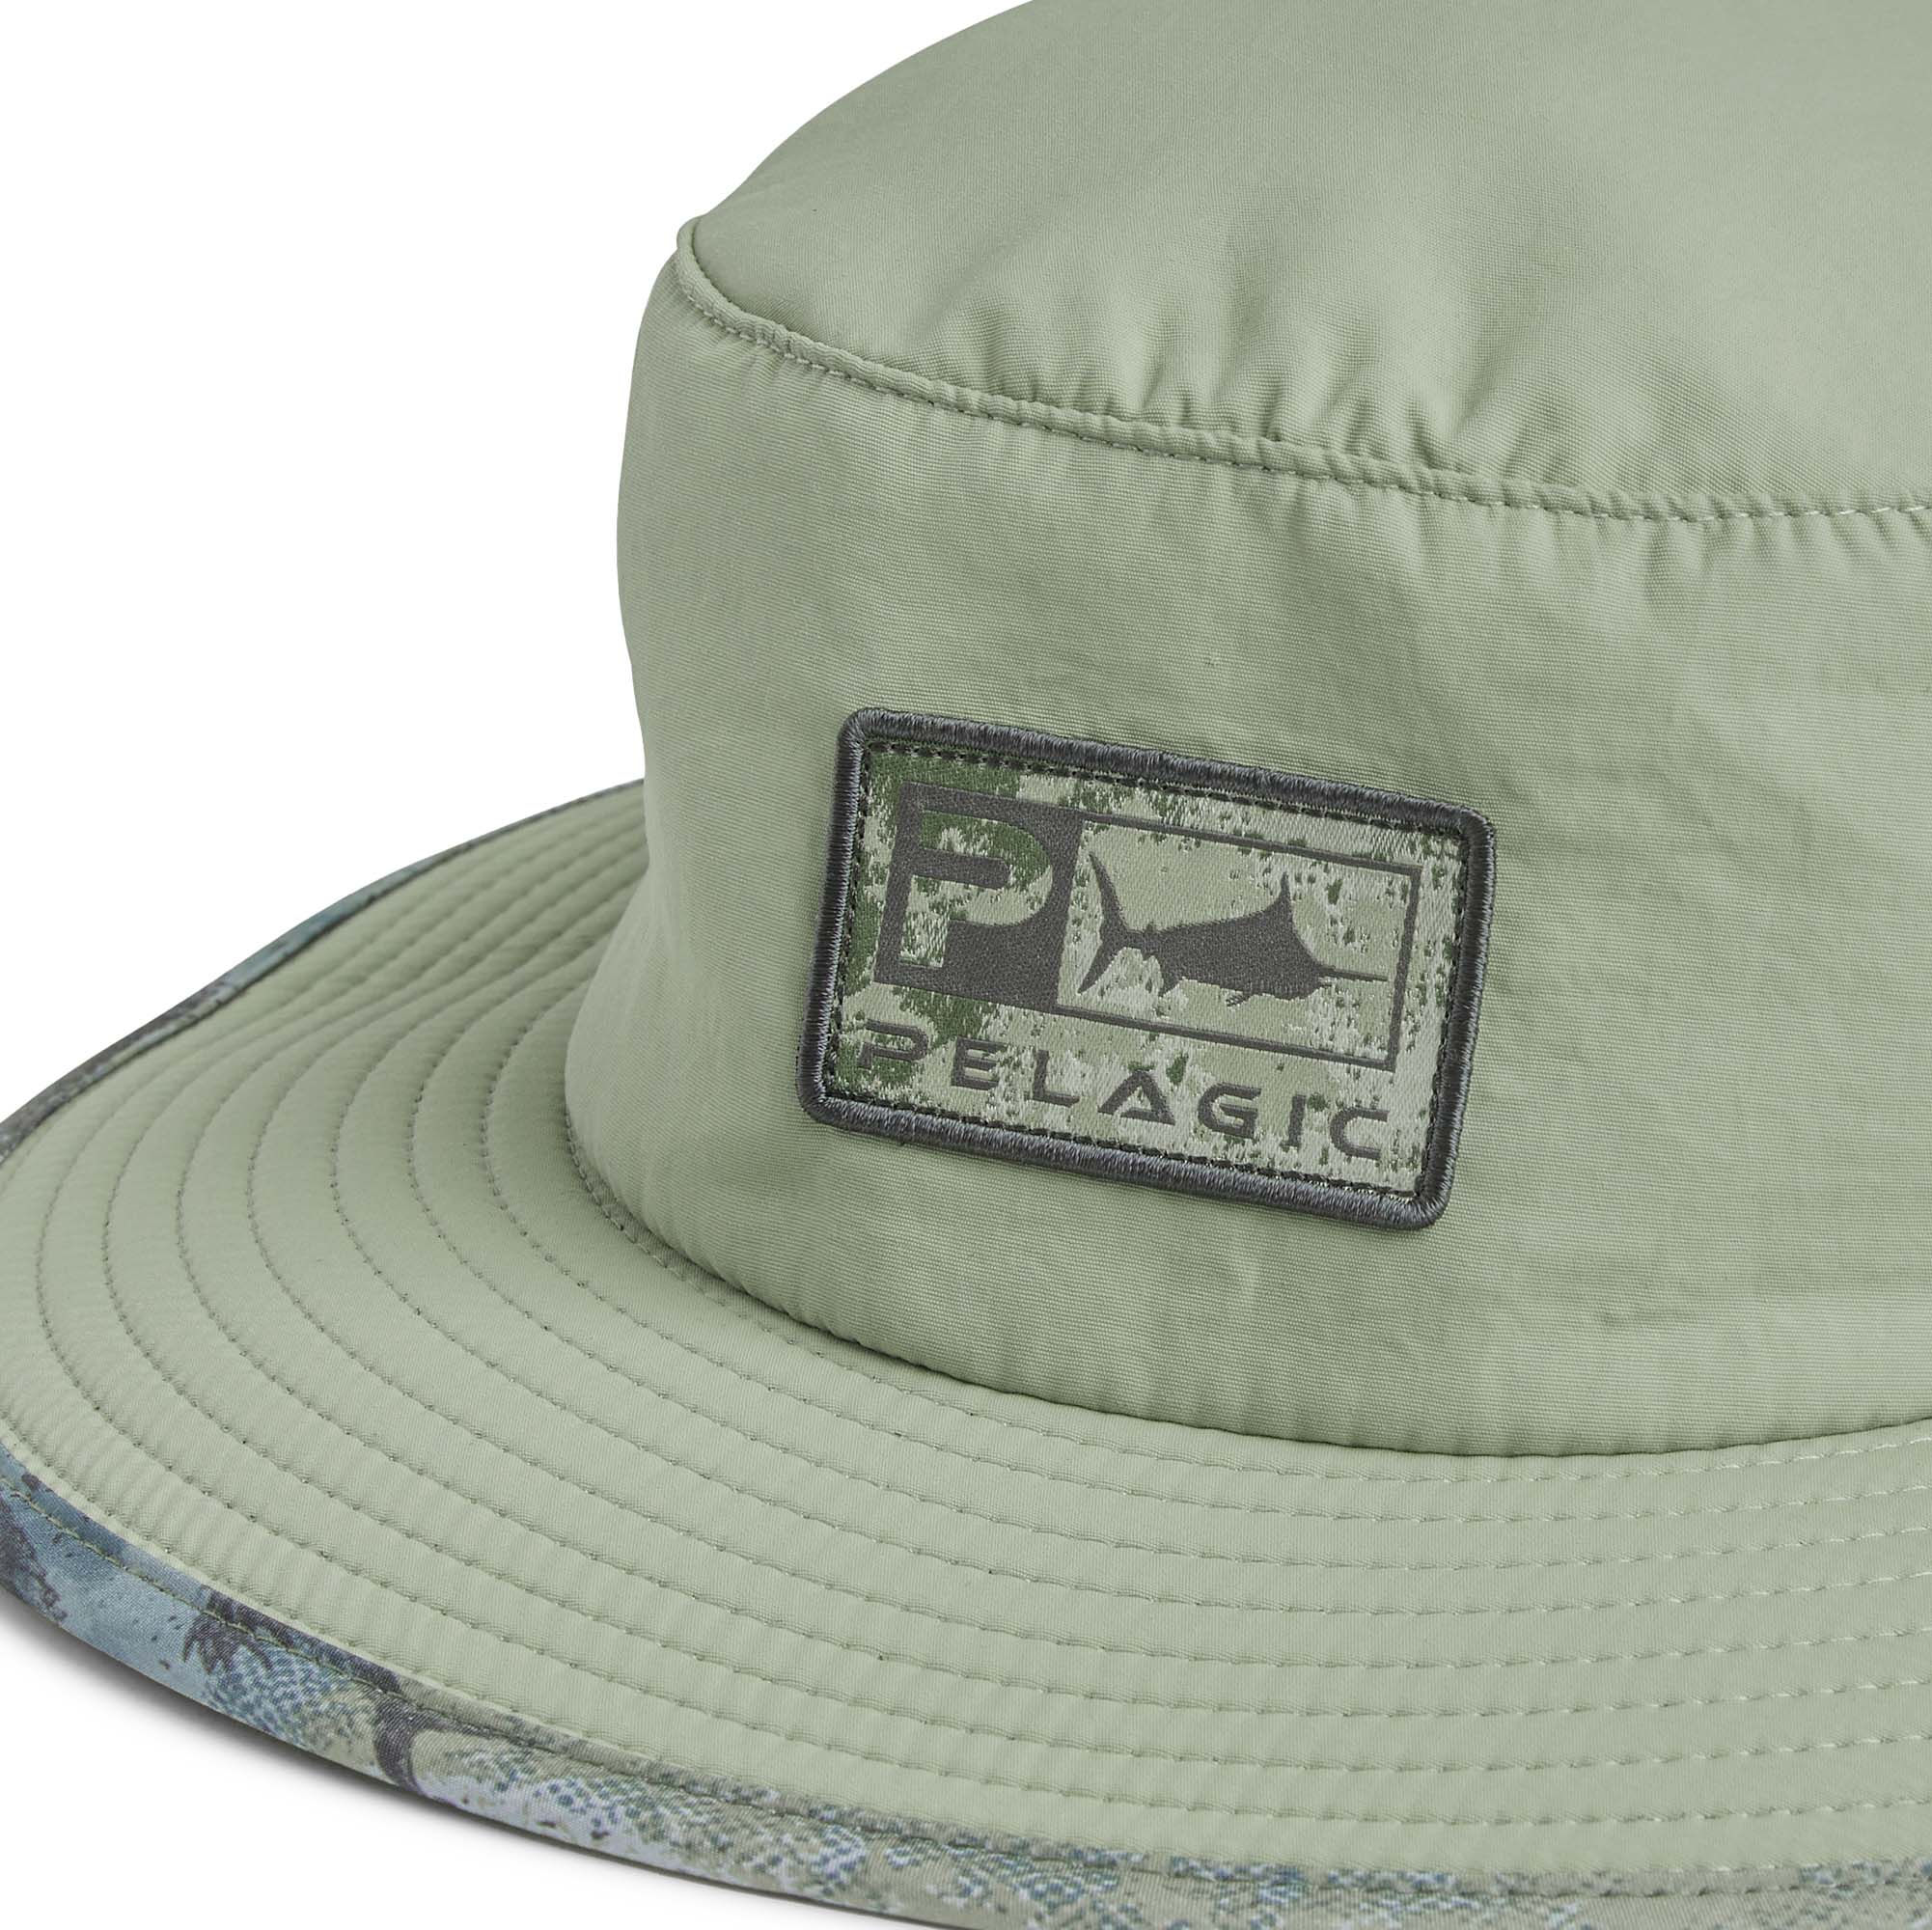 | PELAGIC Bucket Sunsetter Gear Pro Hat Fishing